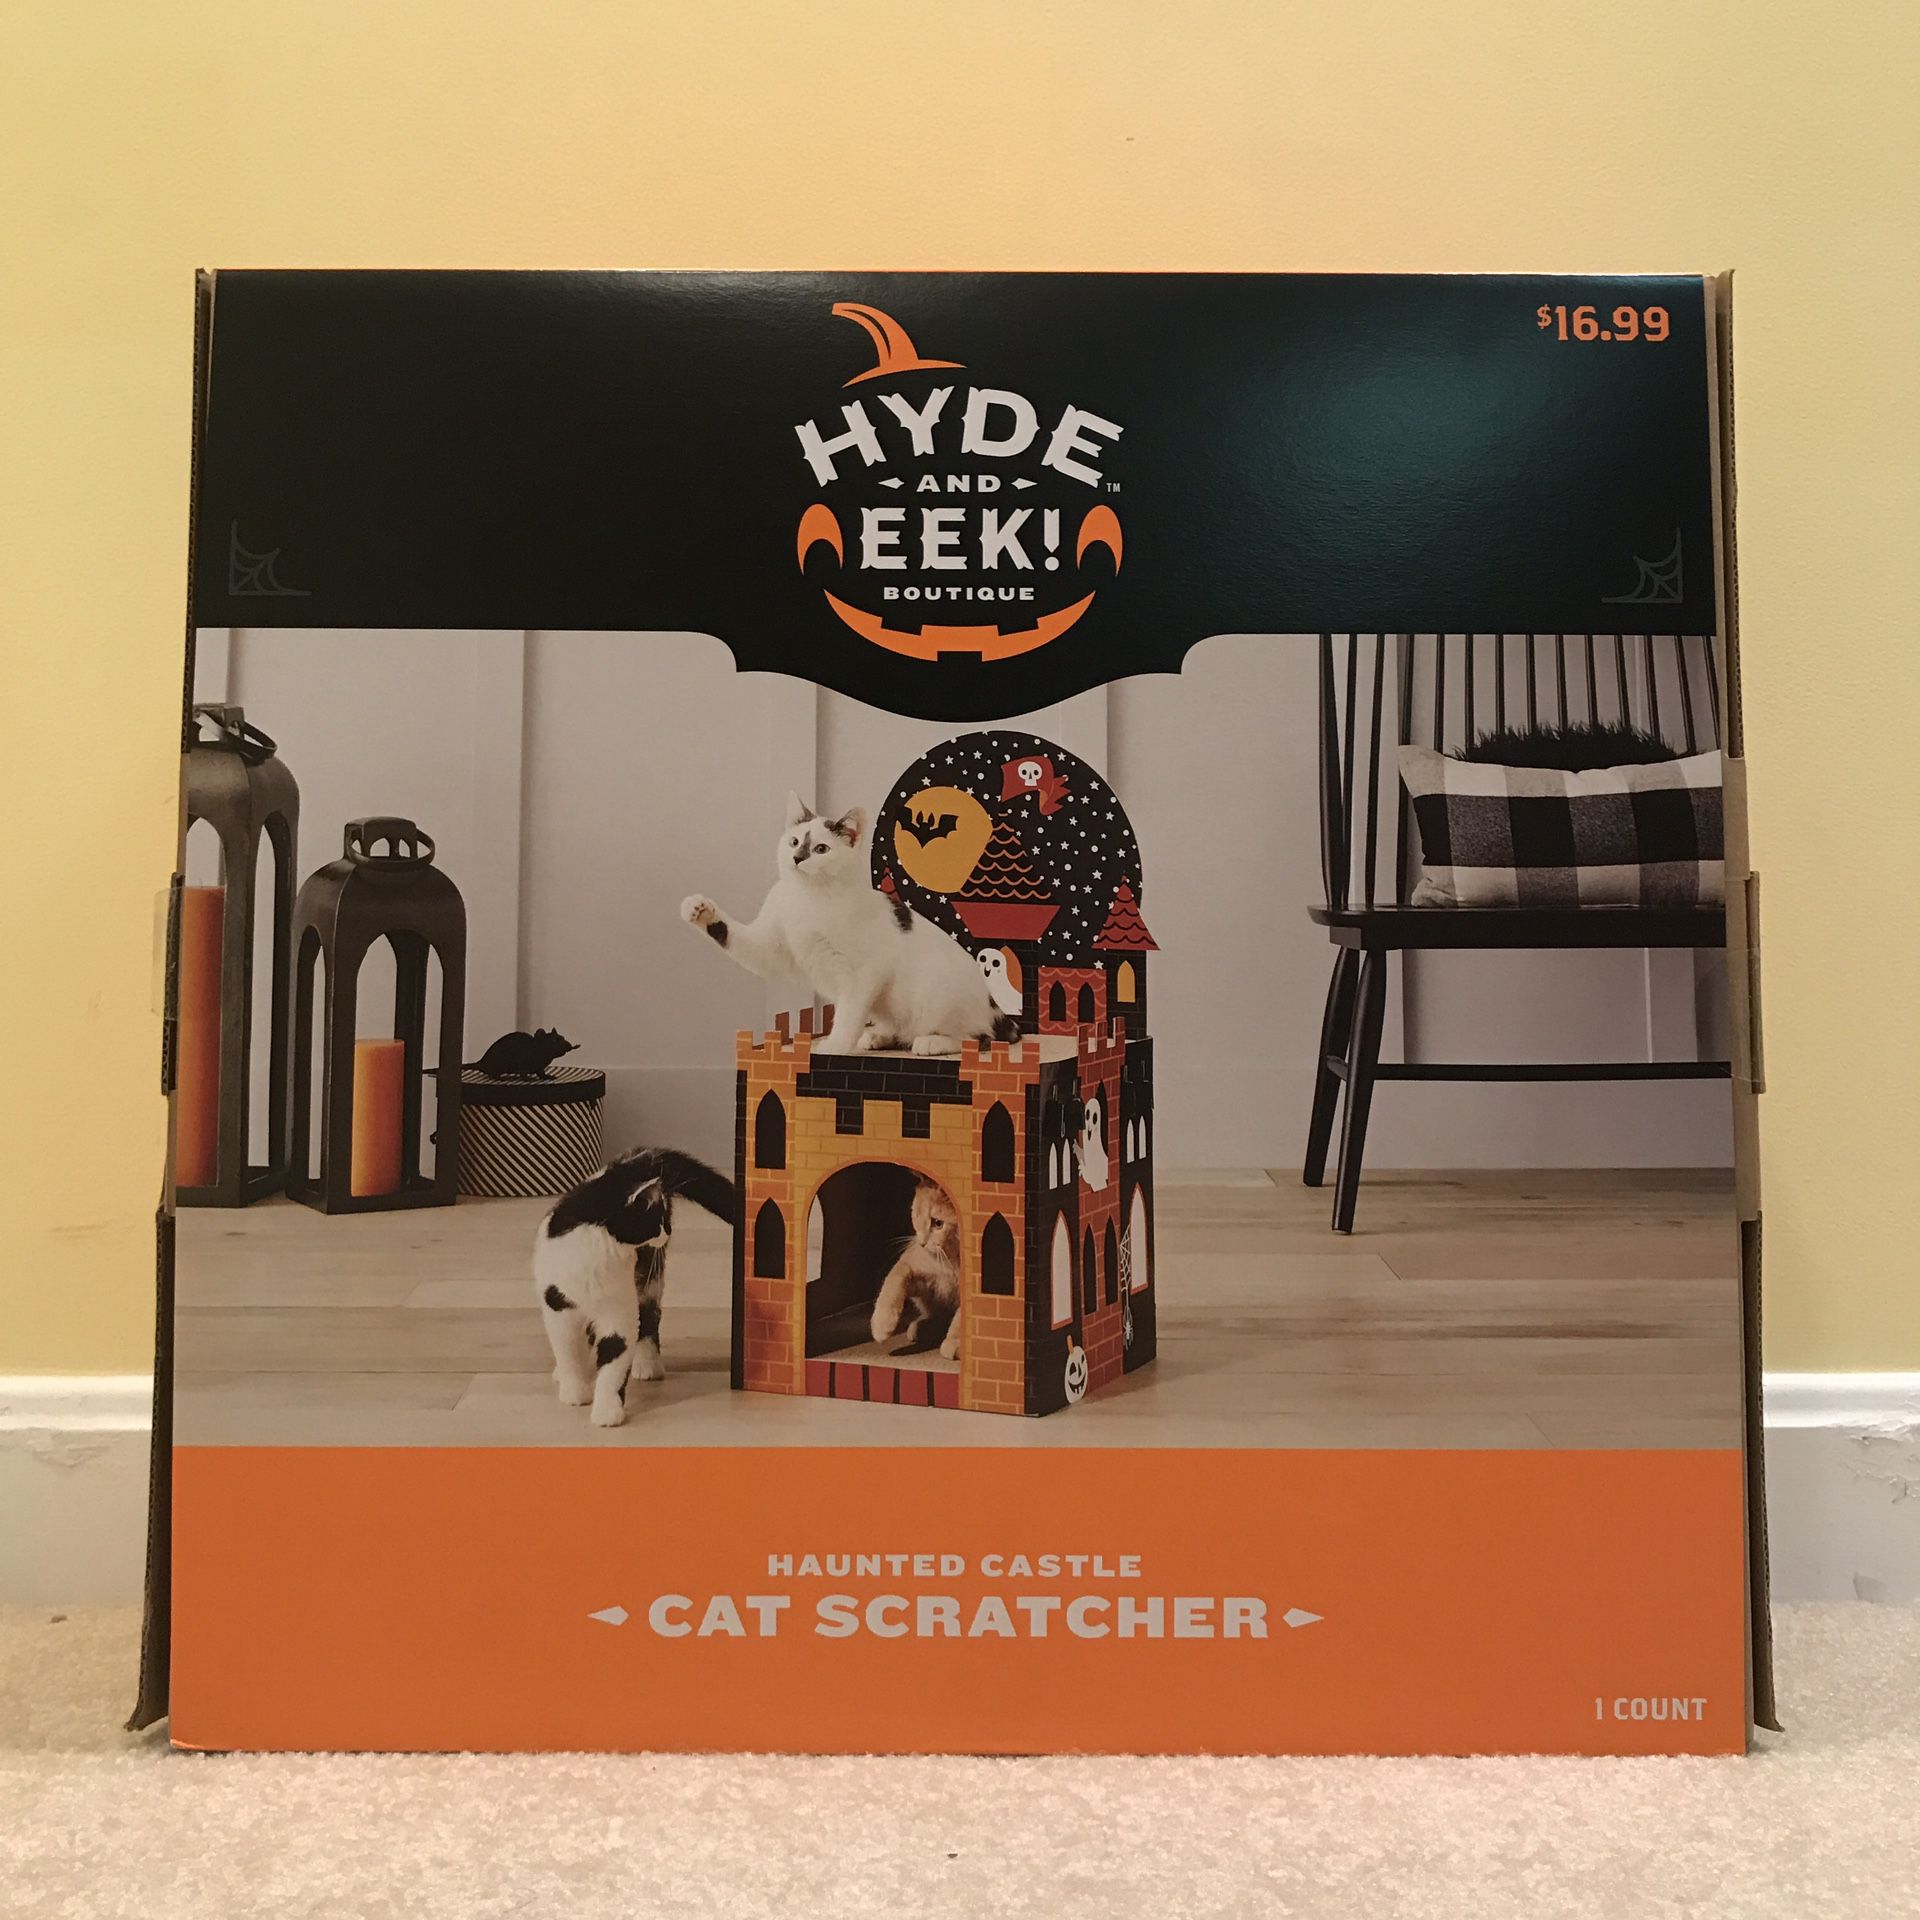 Hyde and Eek Haunted Castle Cat Scratcher Halloween Decoration - Target Exclusive